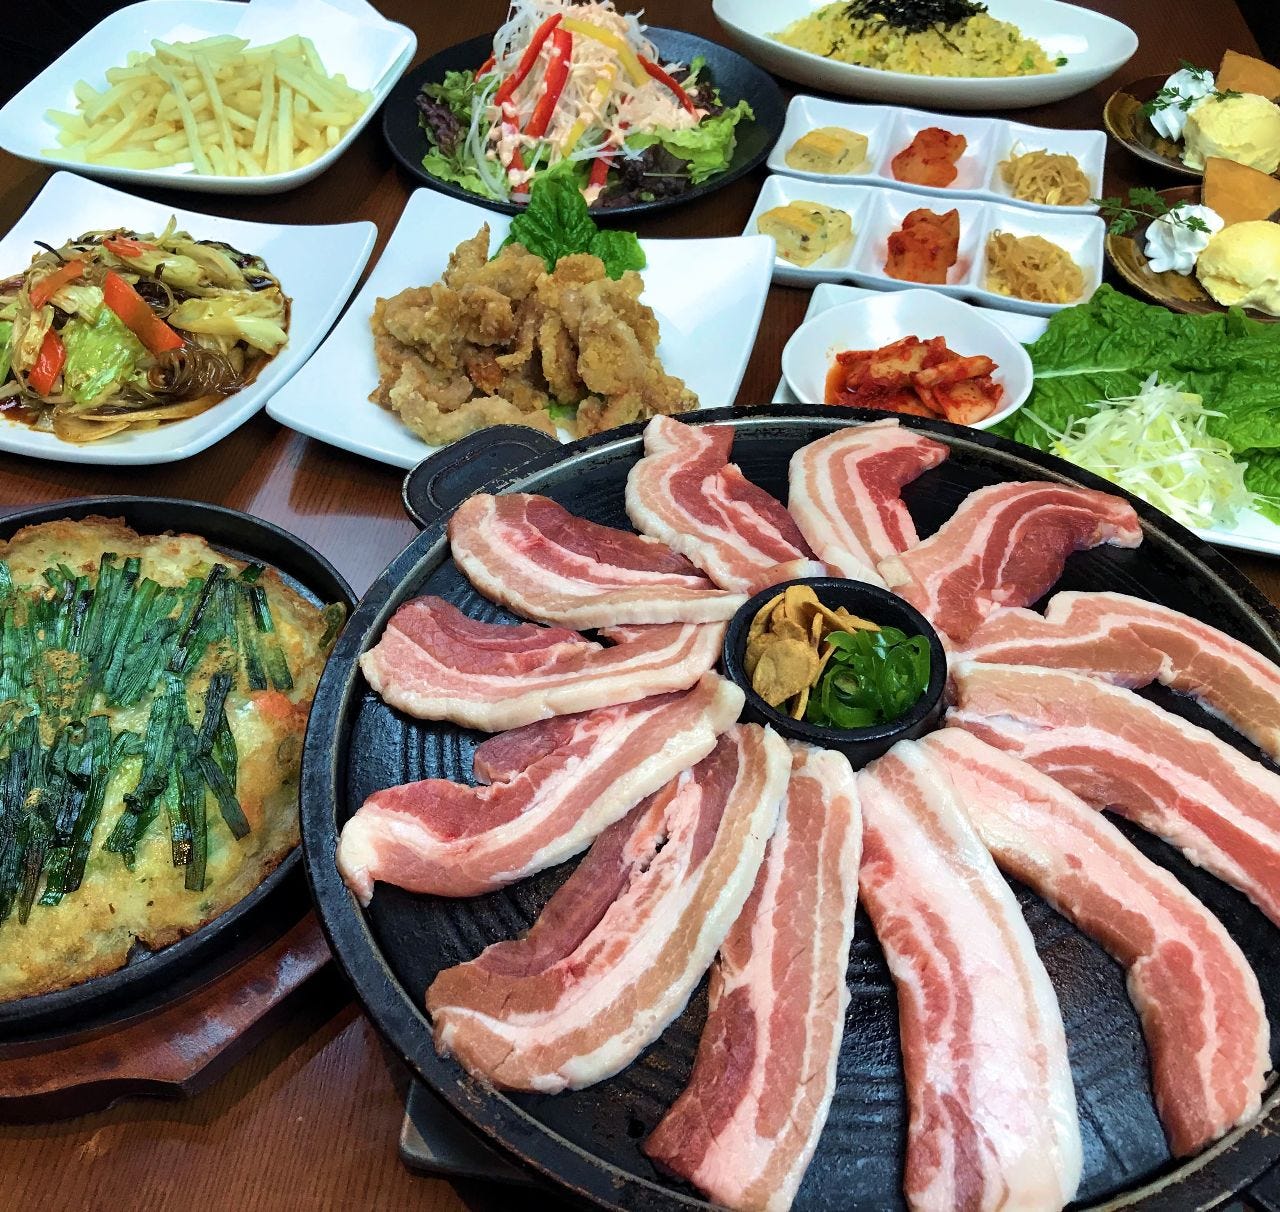 飲み放題付『韓の舌コース』
選べるメイン料理(サムギョプサル) 